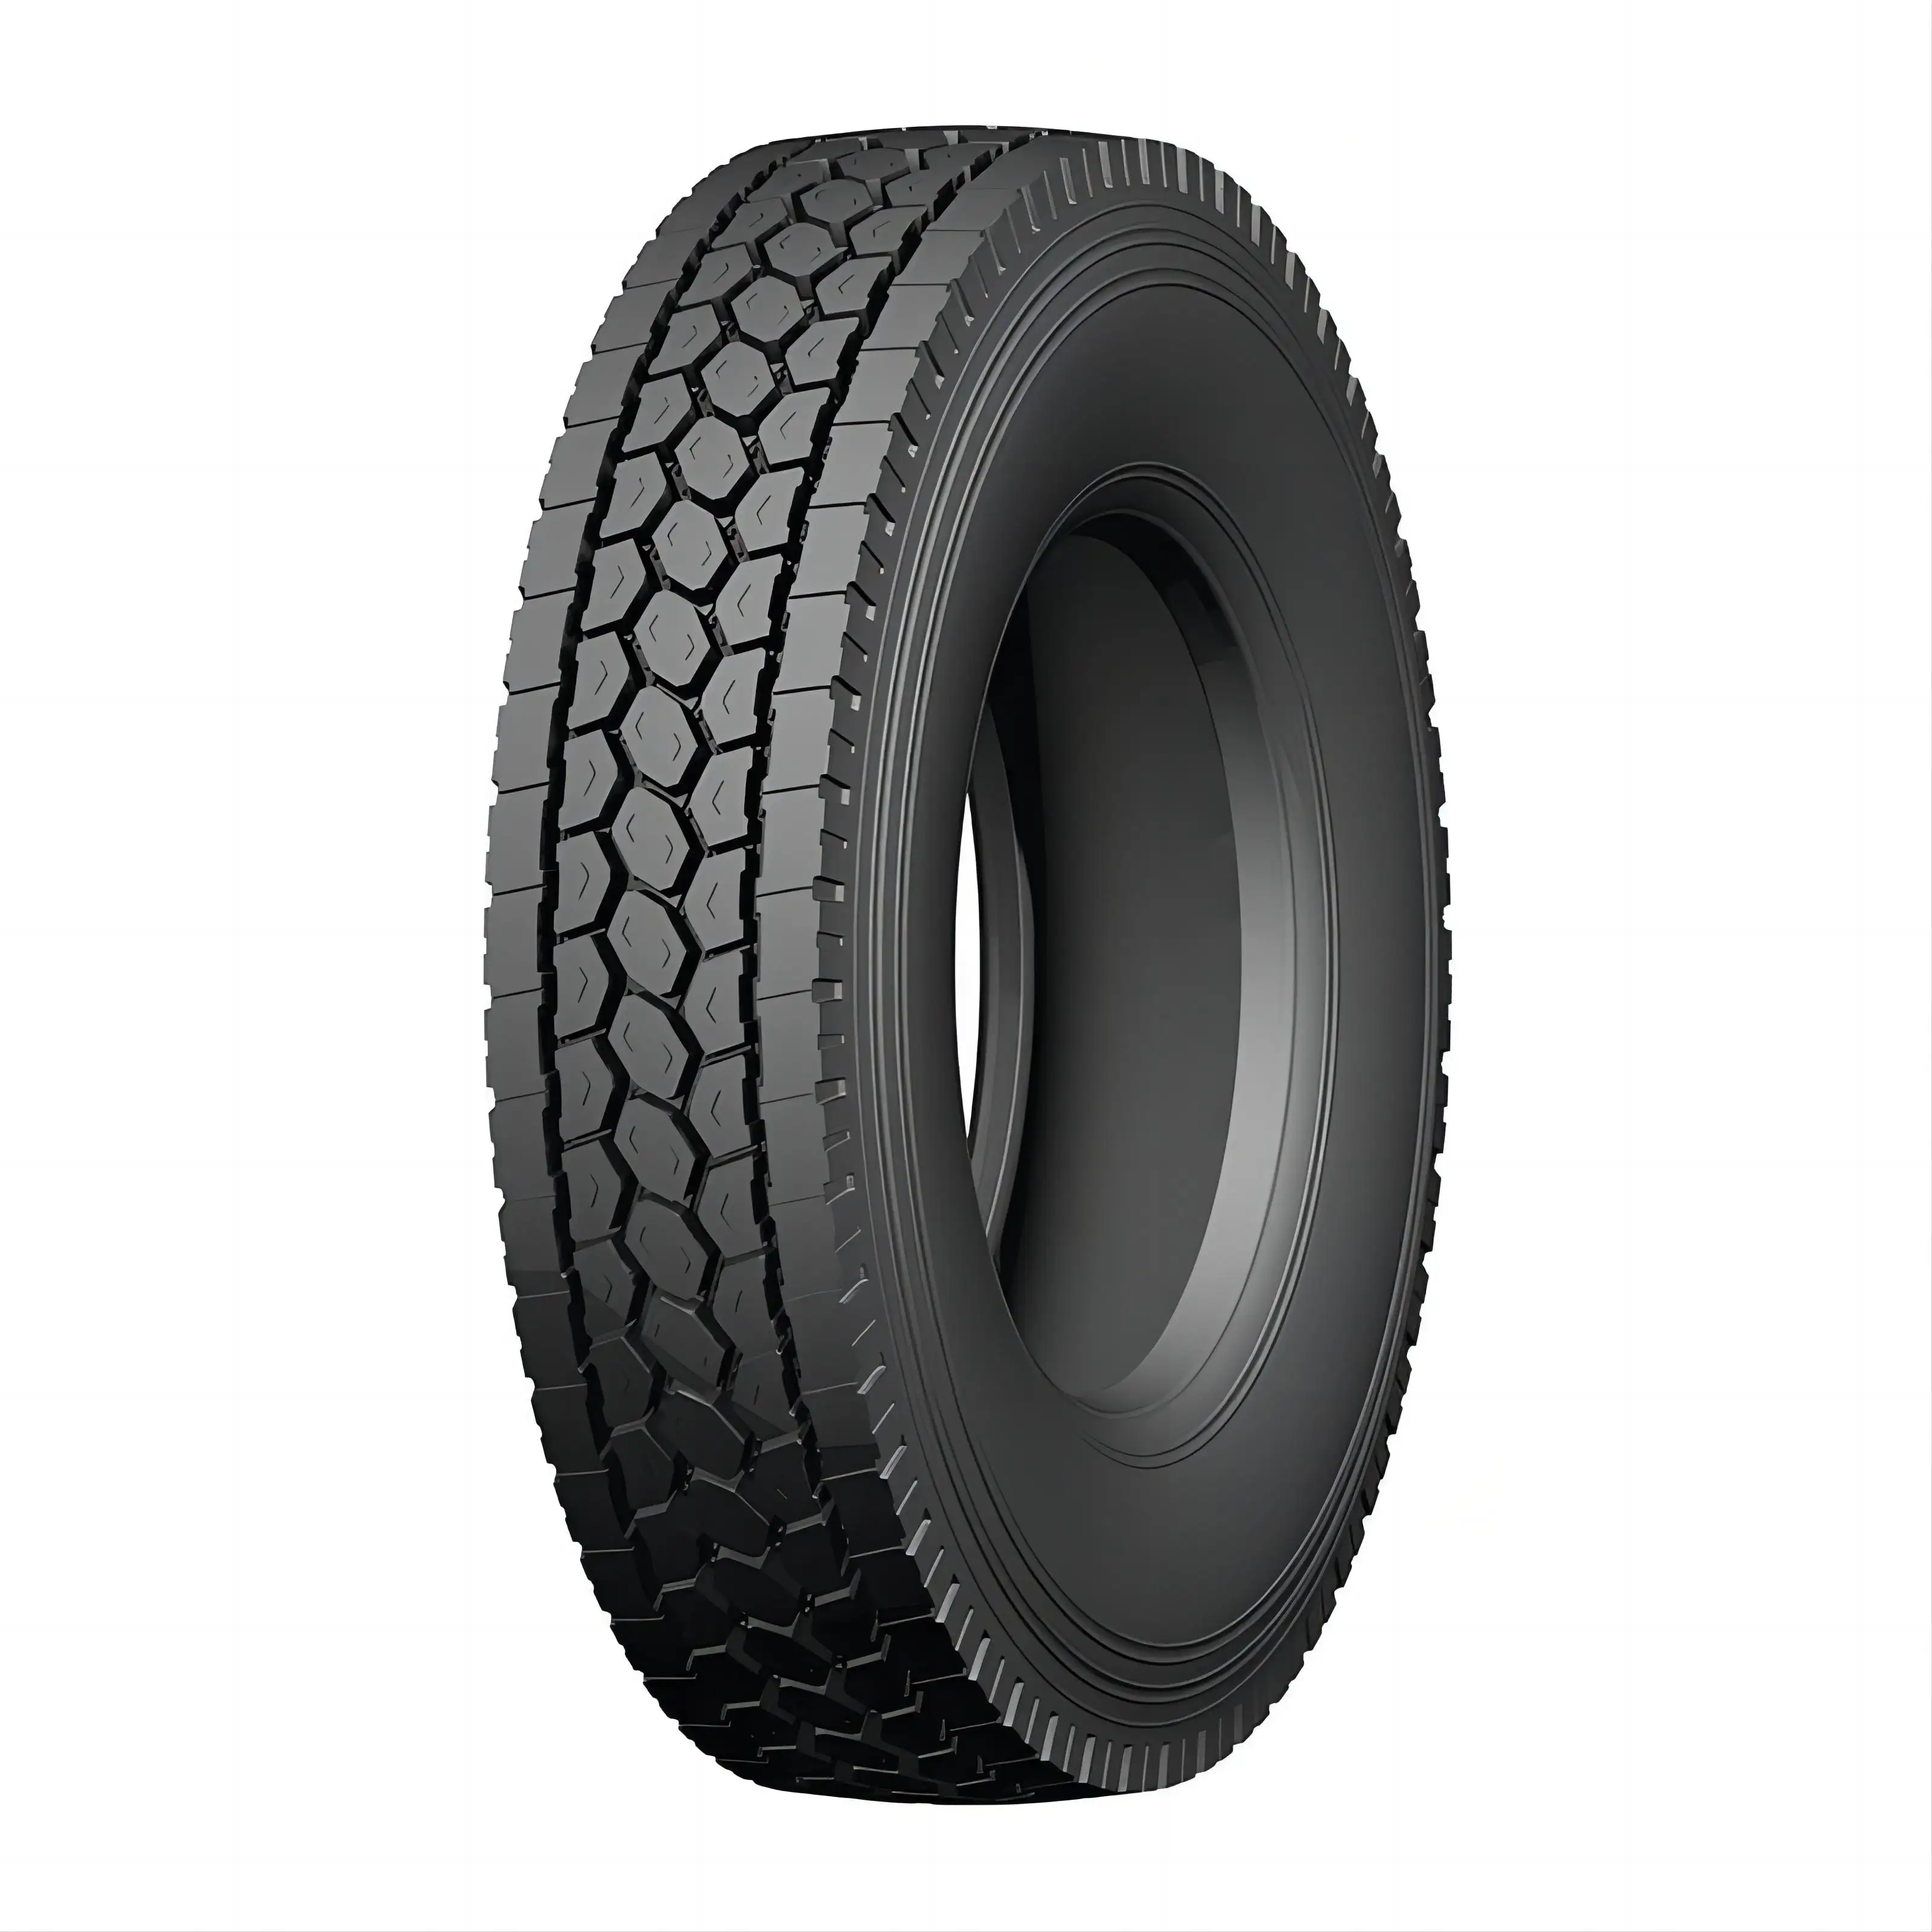 Wholesale Import new tires for trucks 11r22.5 295/80r22.5 12r22.5 inner tube truck tyres 700r16 750r16 12.00r20